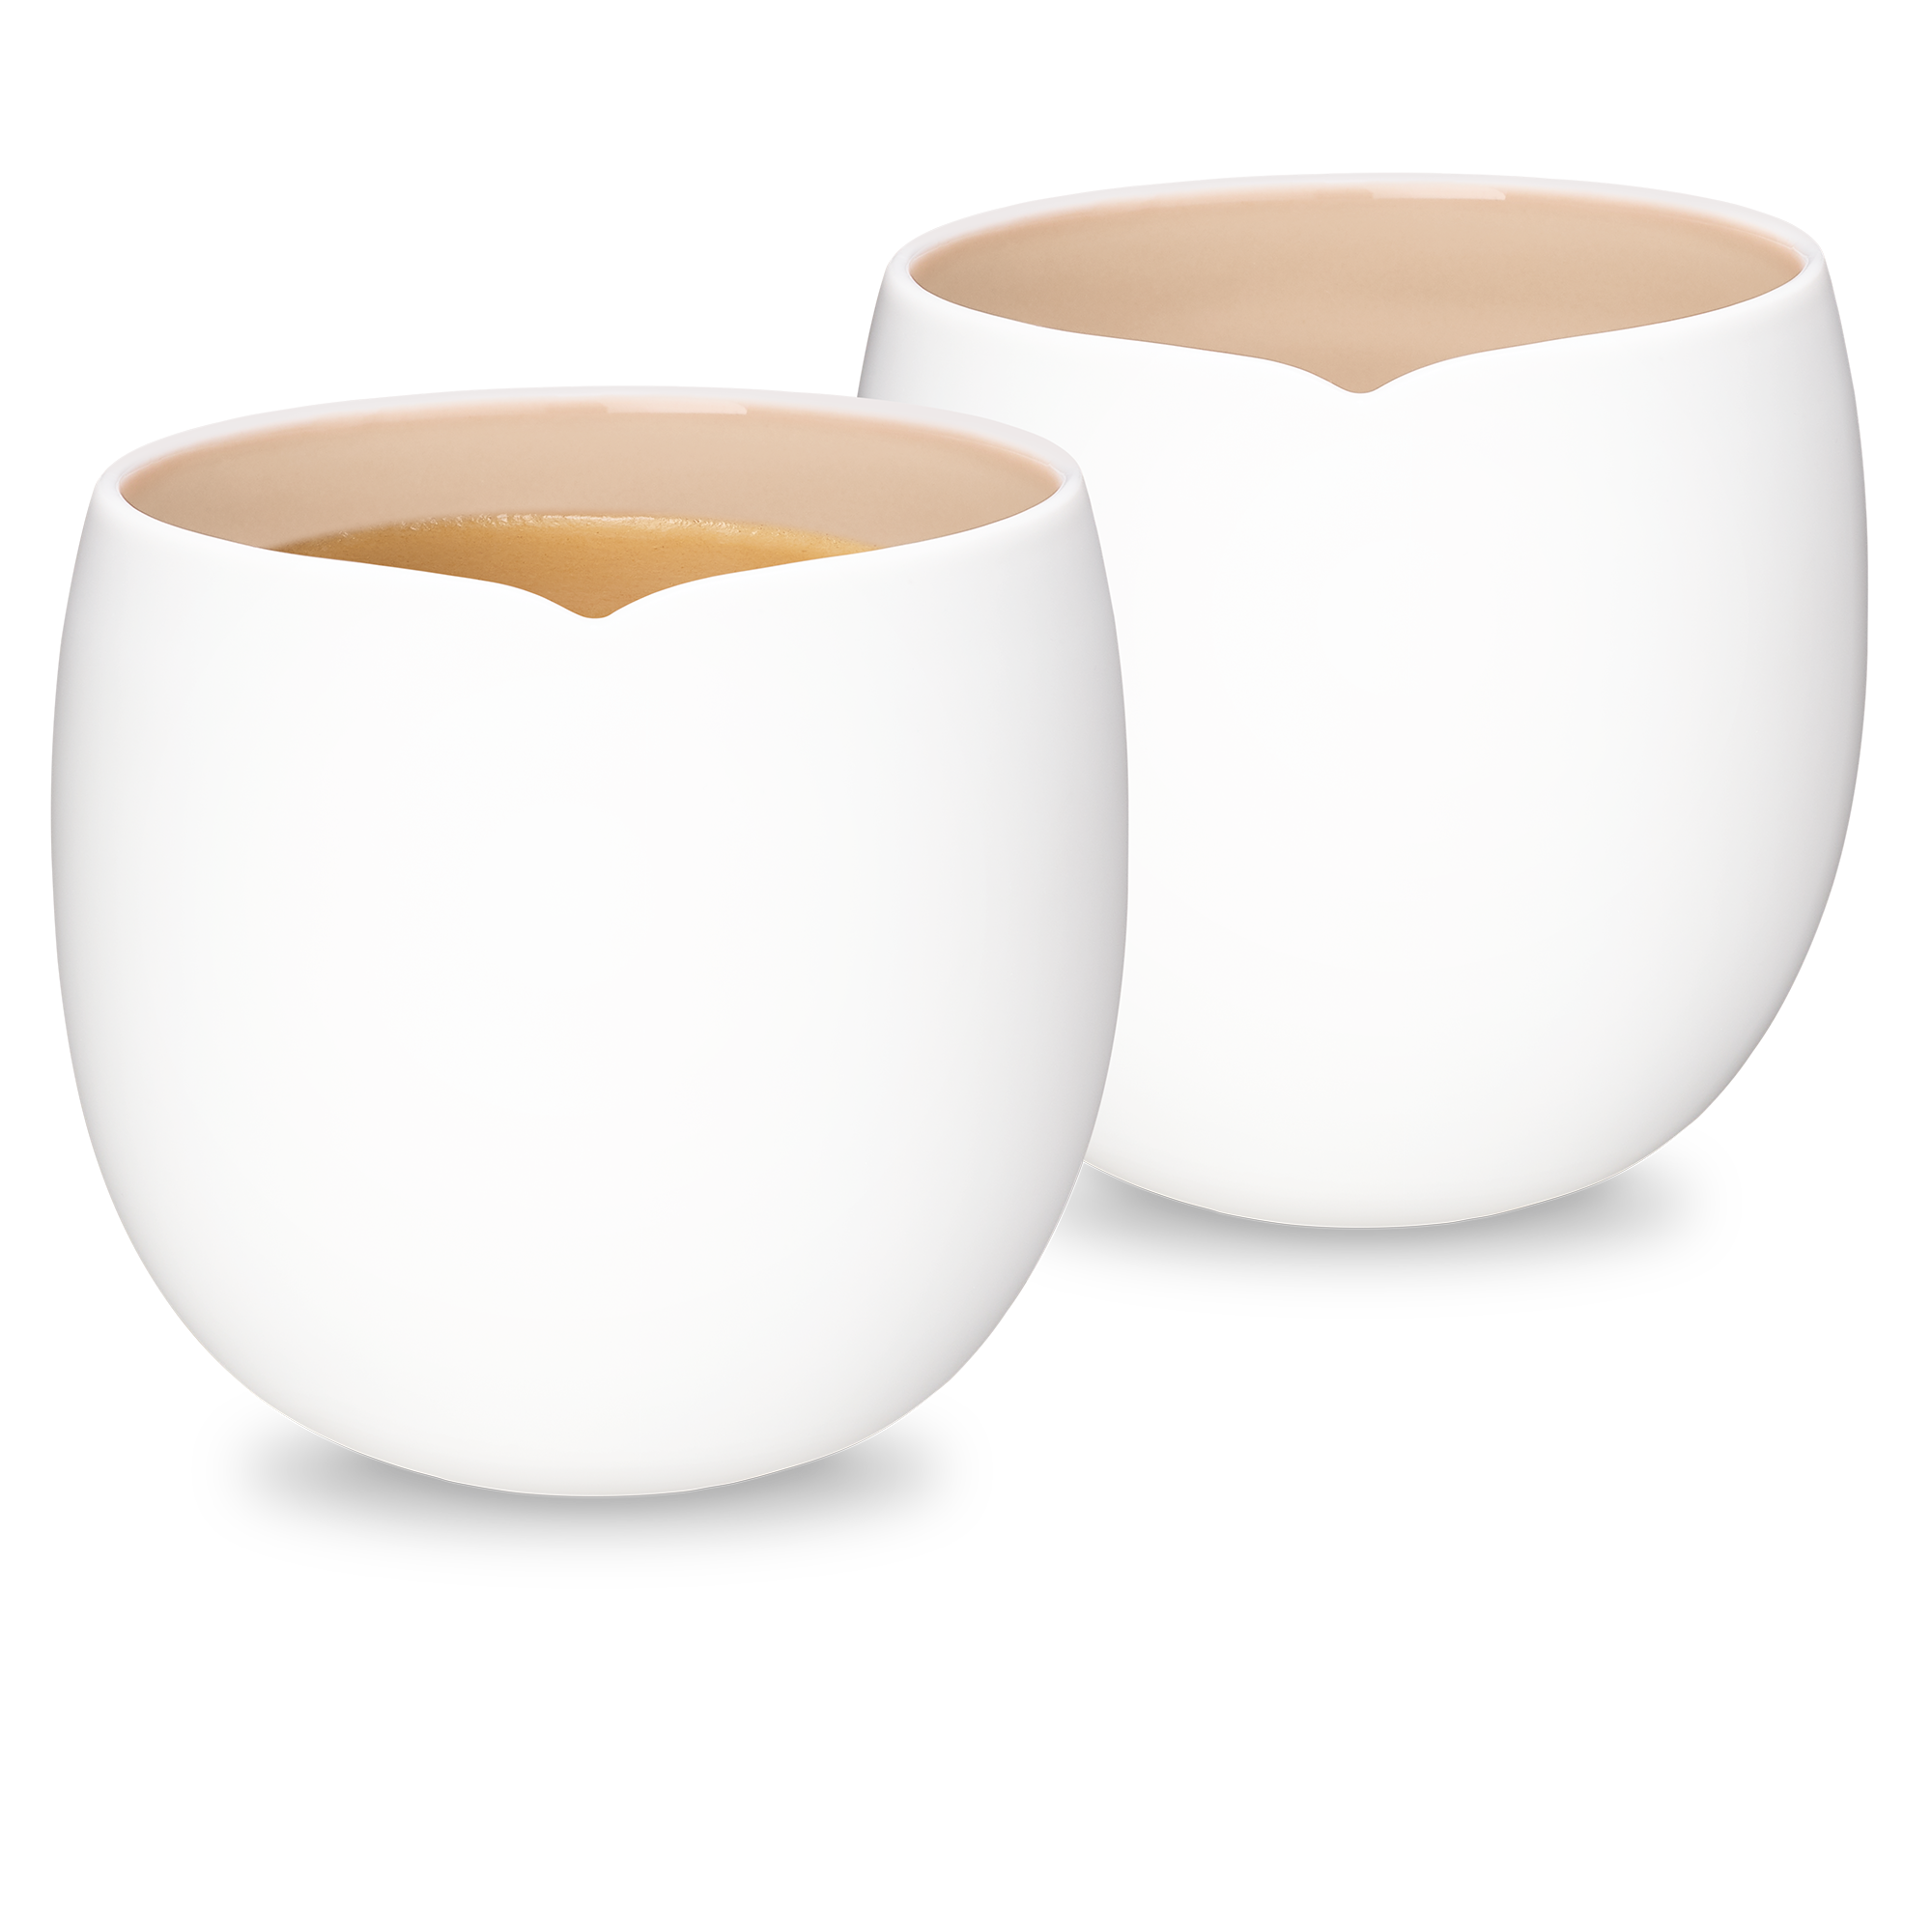 Nespresso Origin Collection 1x Espresso Coffee Cup White Porcelain New 80ml